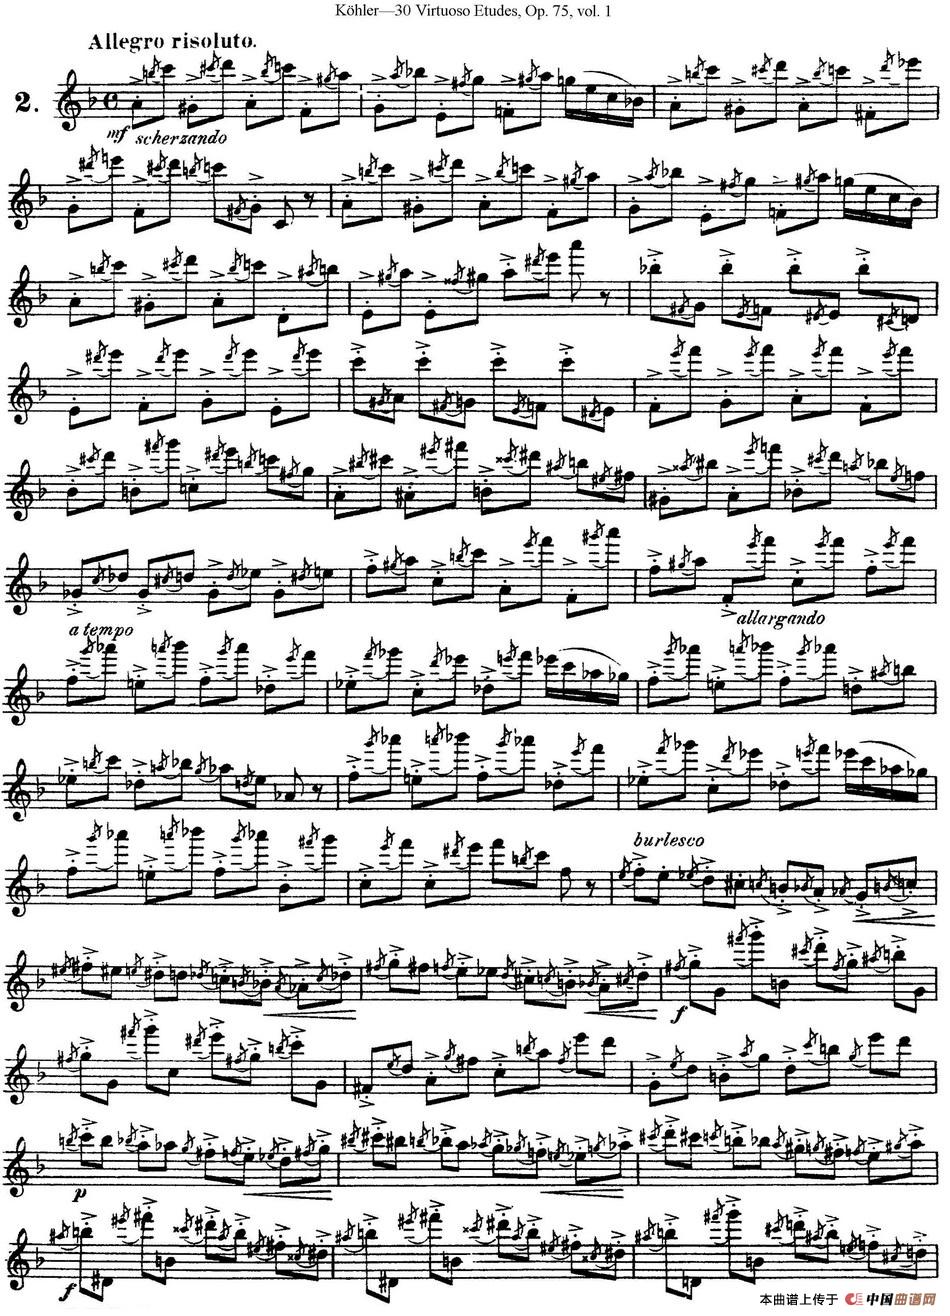 柯勒30首高级长笛练习曲作品75号（NO.2）长笛谱